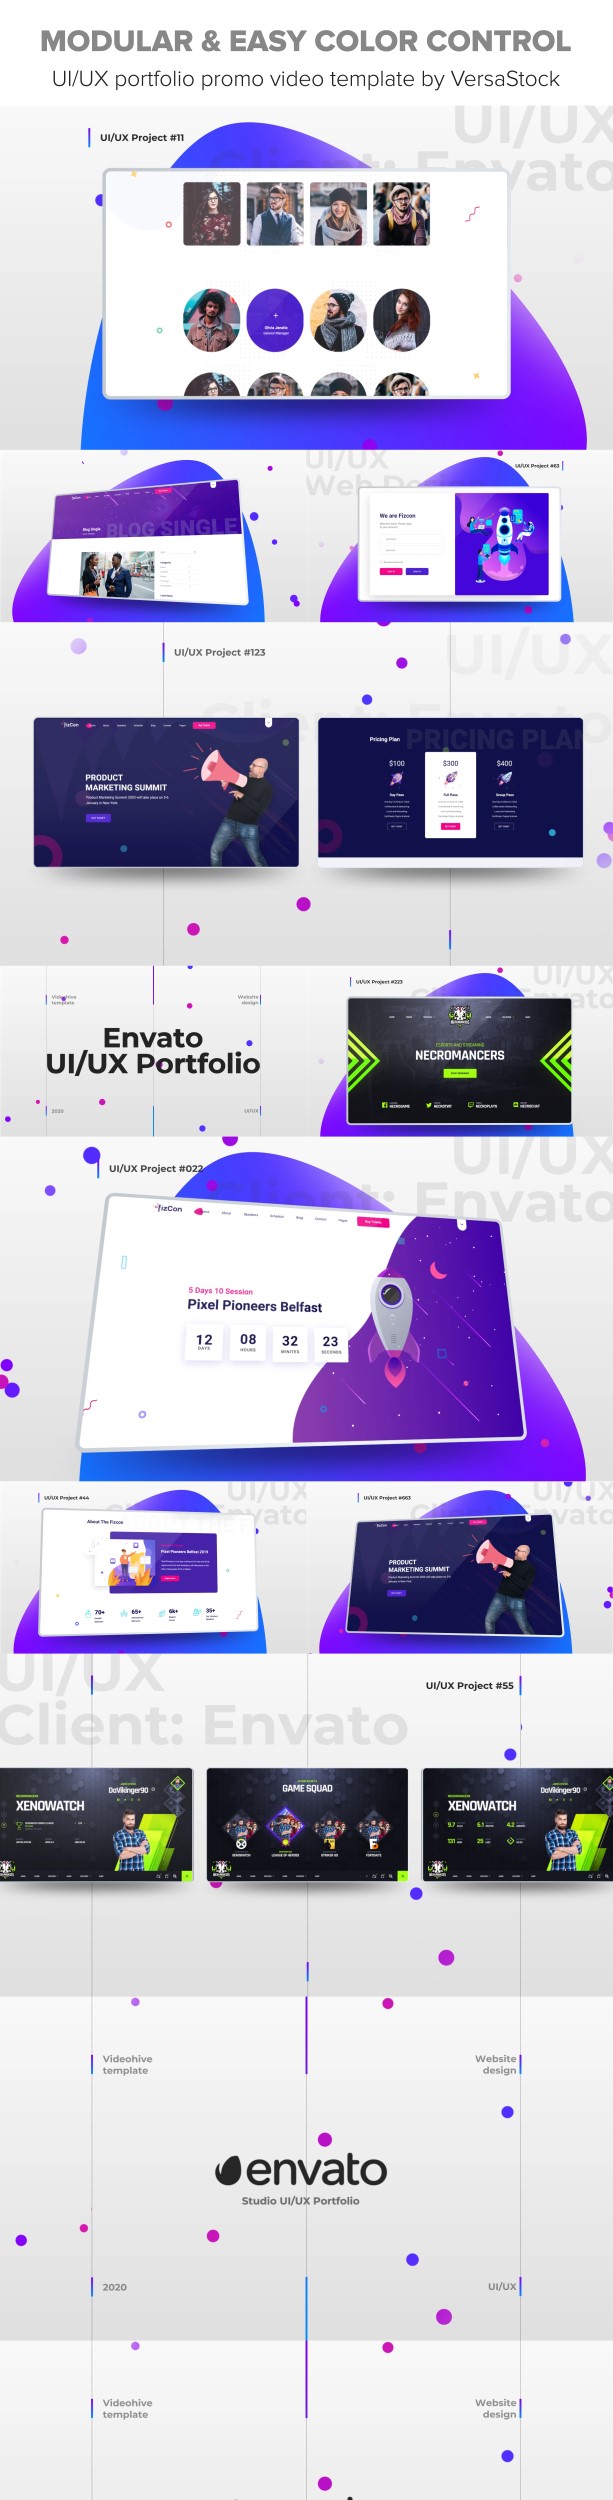 UI/UX Portfolio Promo - 4